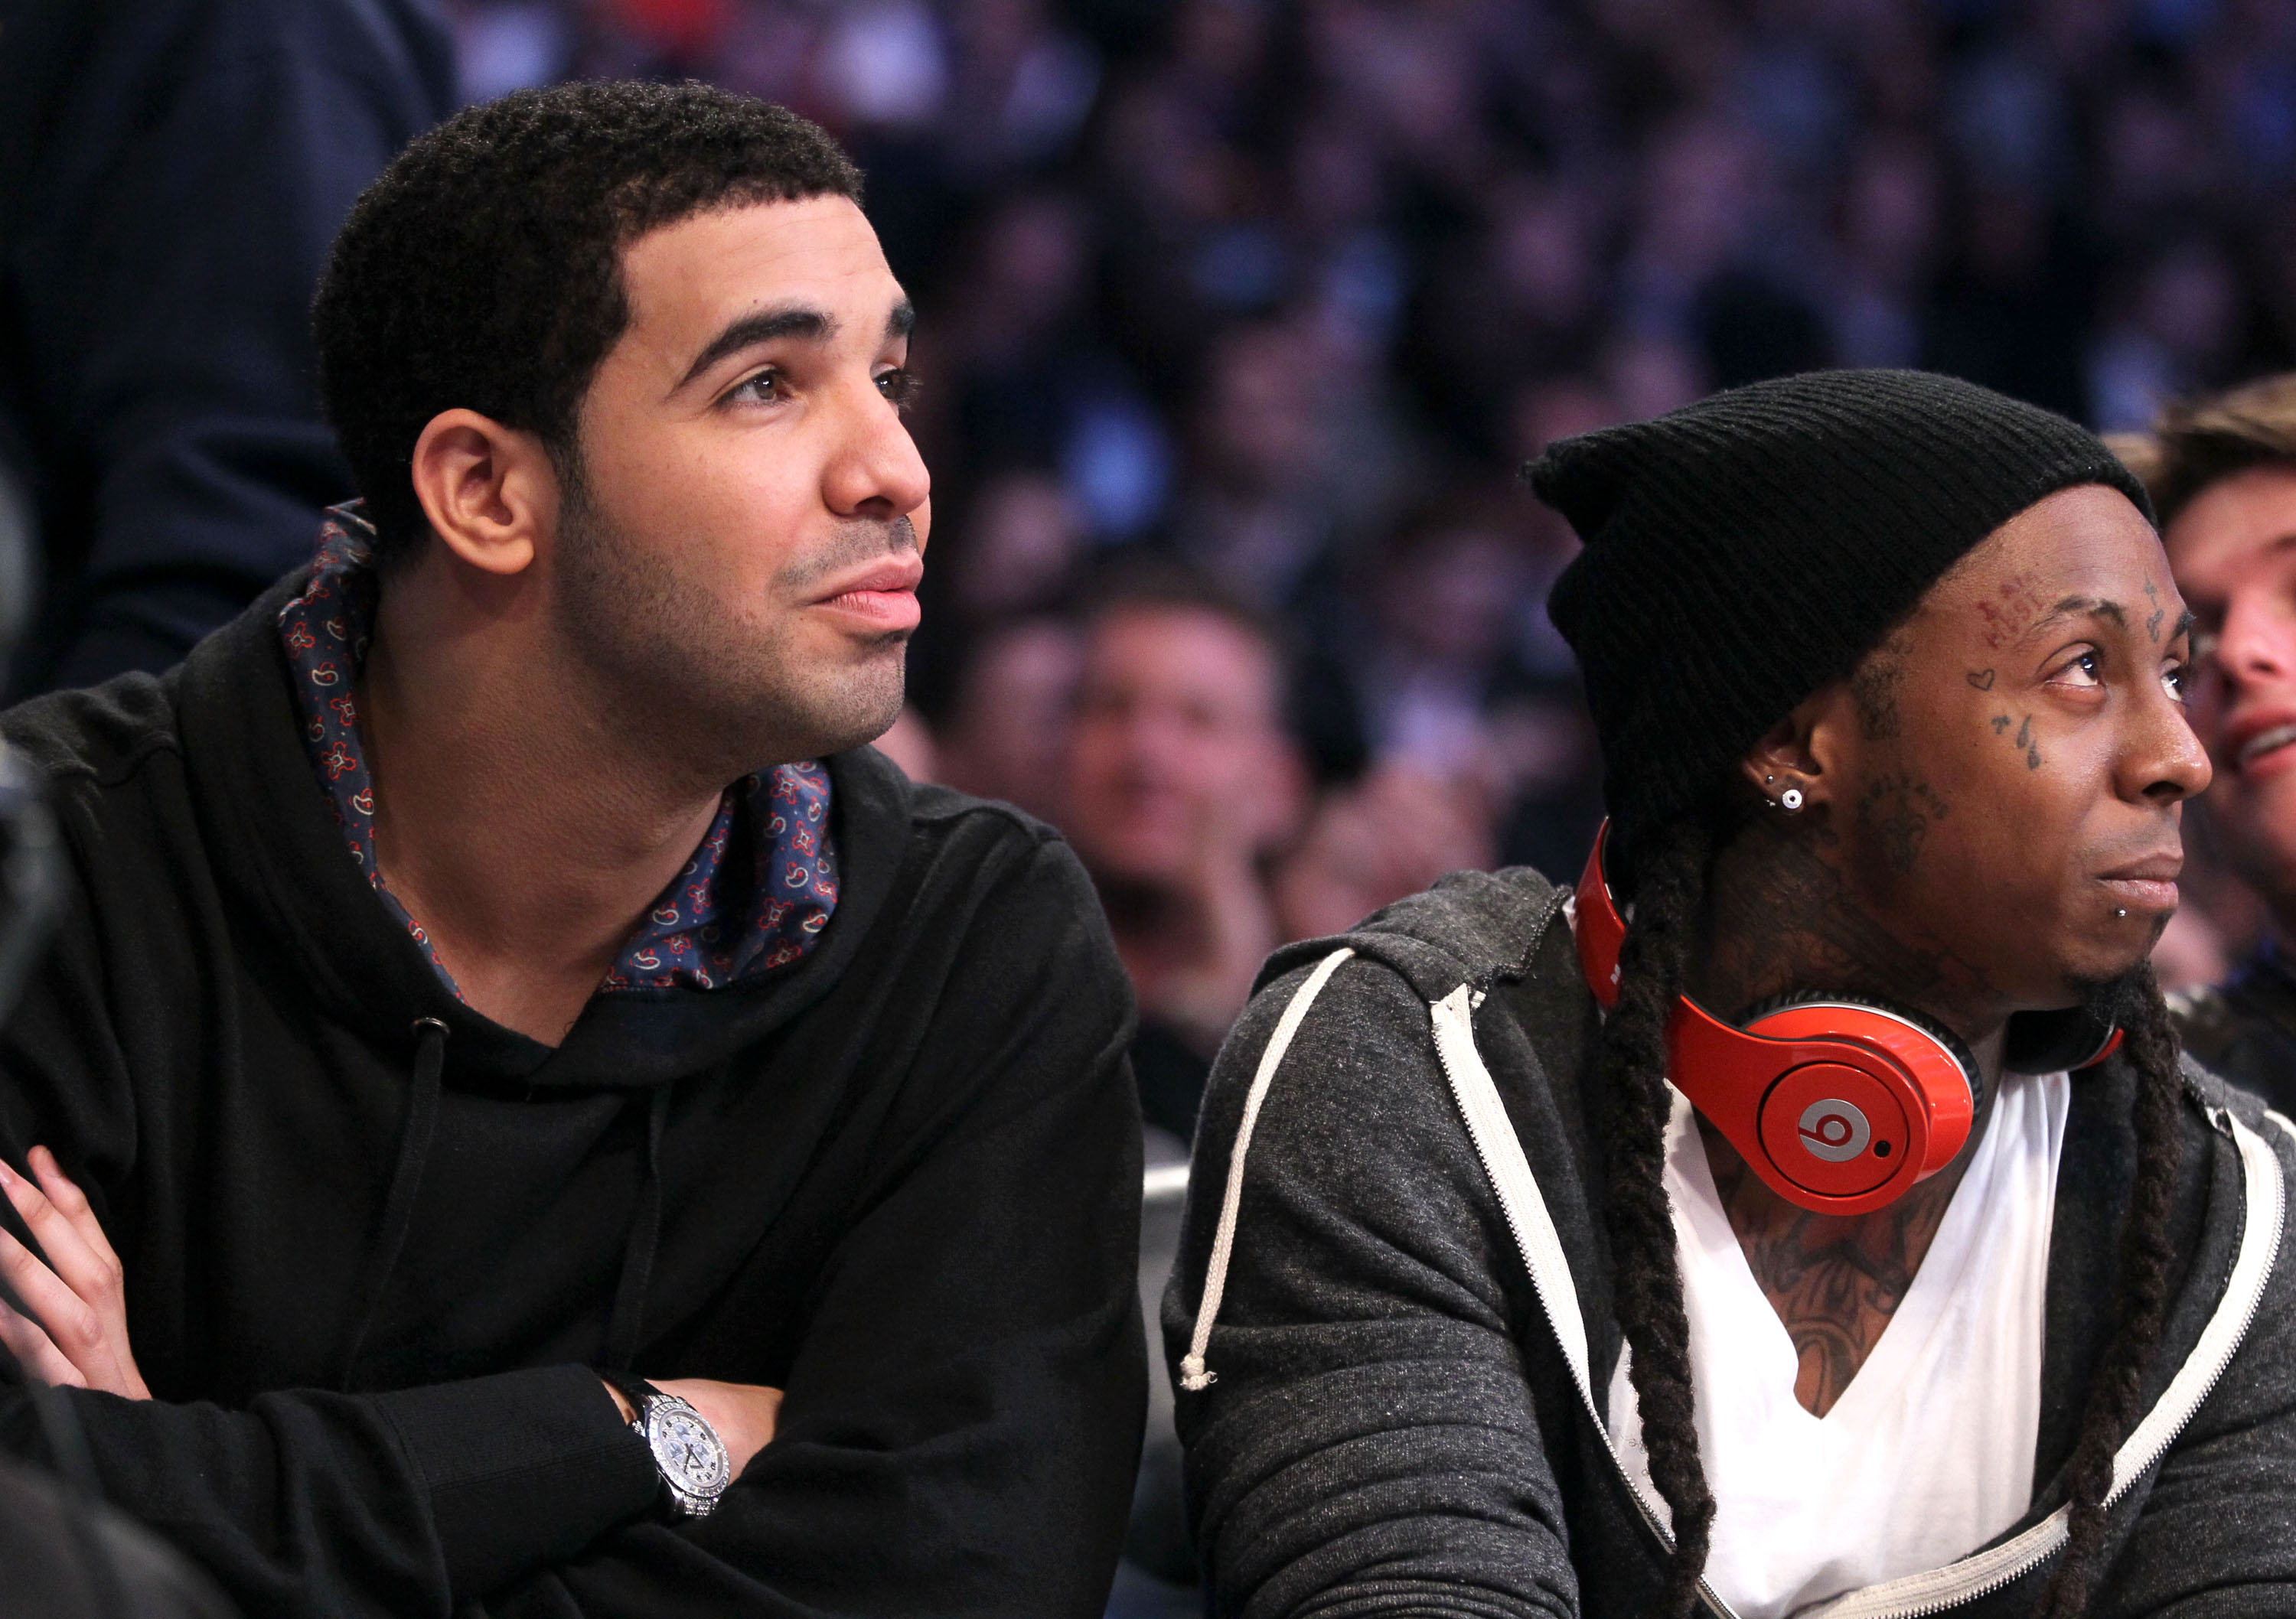 Drake and Lil Wayne at a basketball game